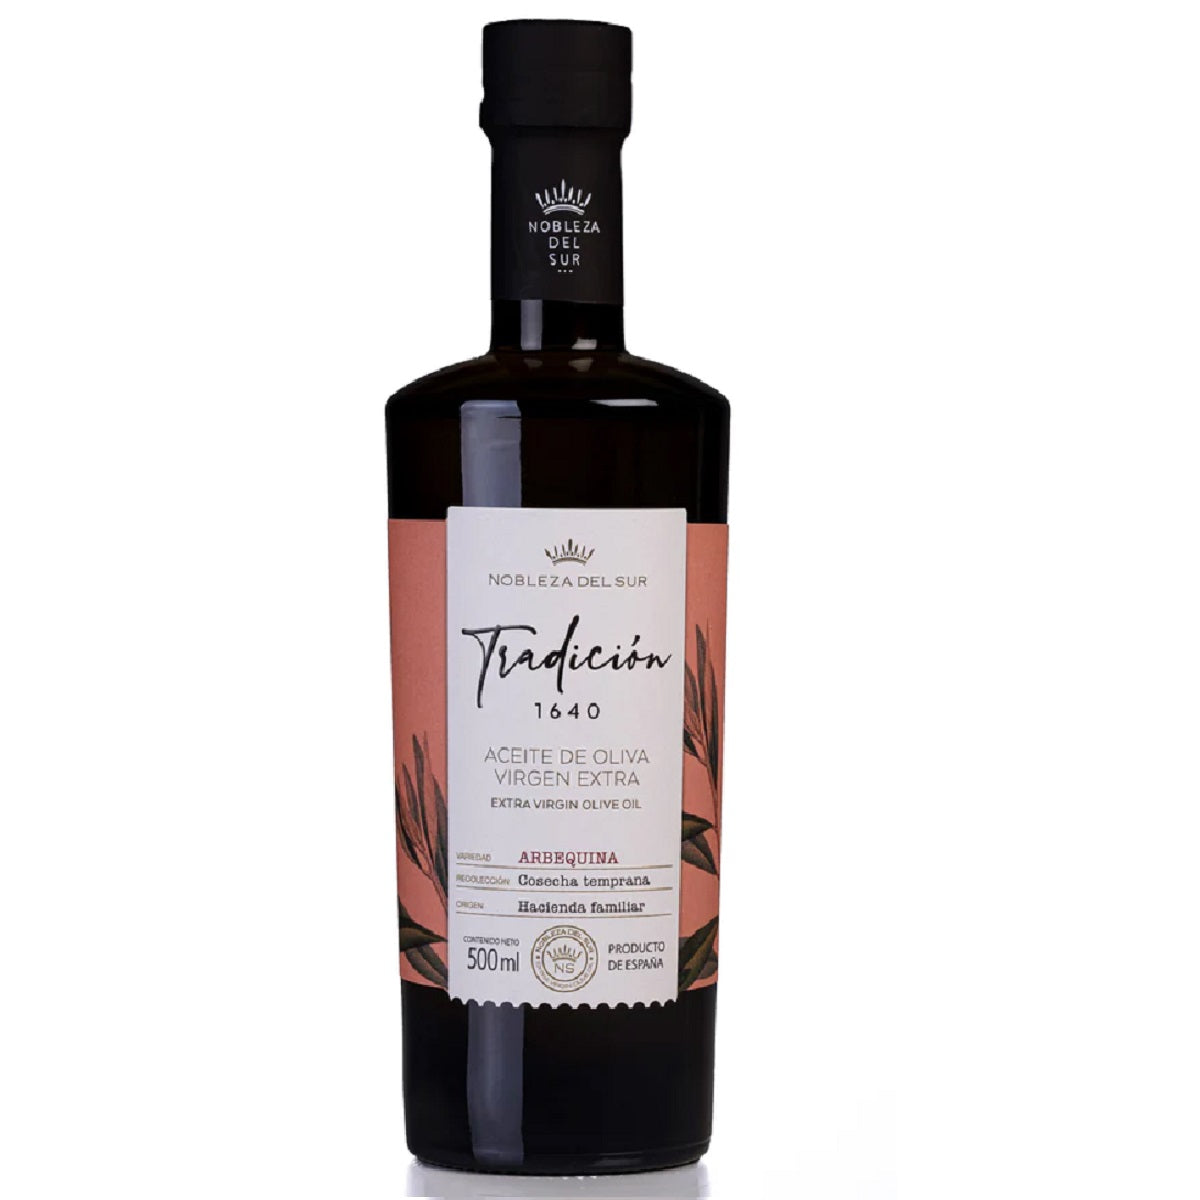 Nobleza del Sur Tradición 1640 Extra Virgin Olive Oil 500ml